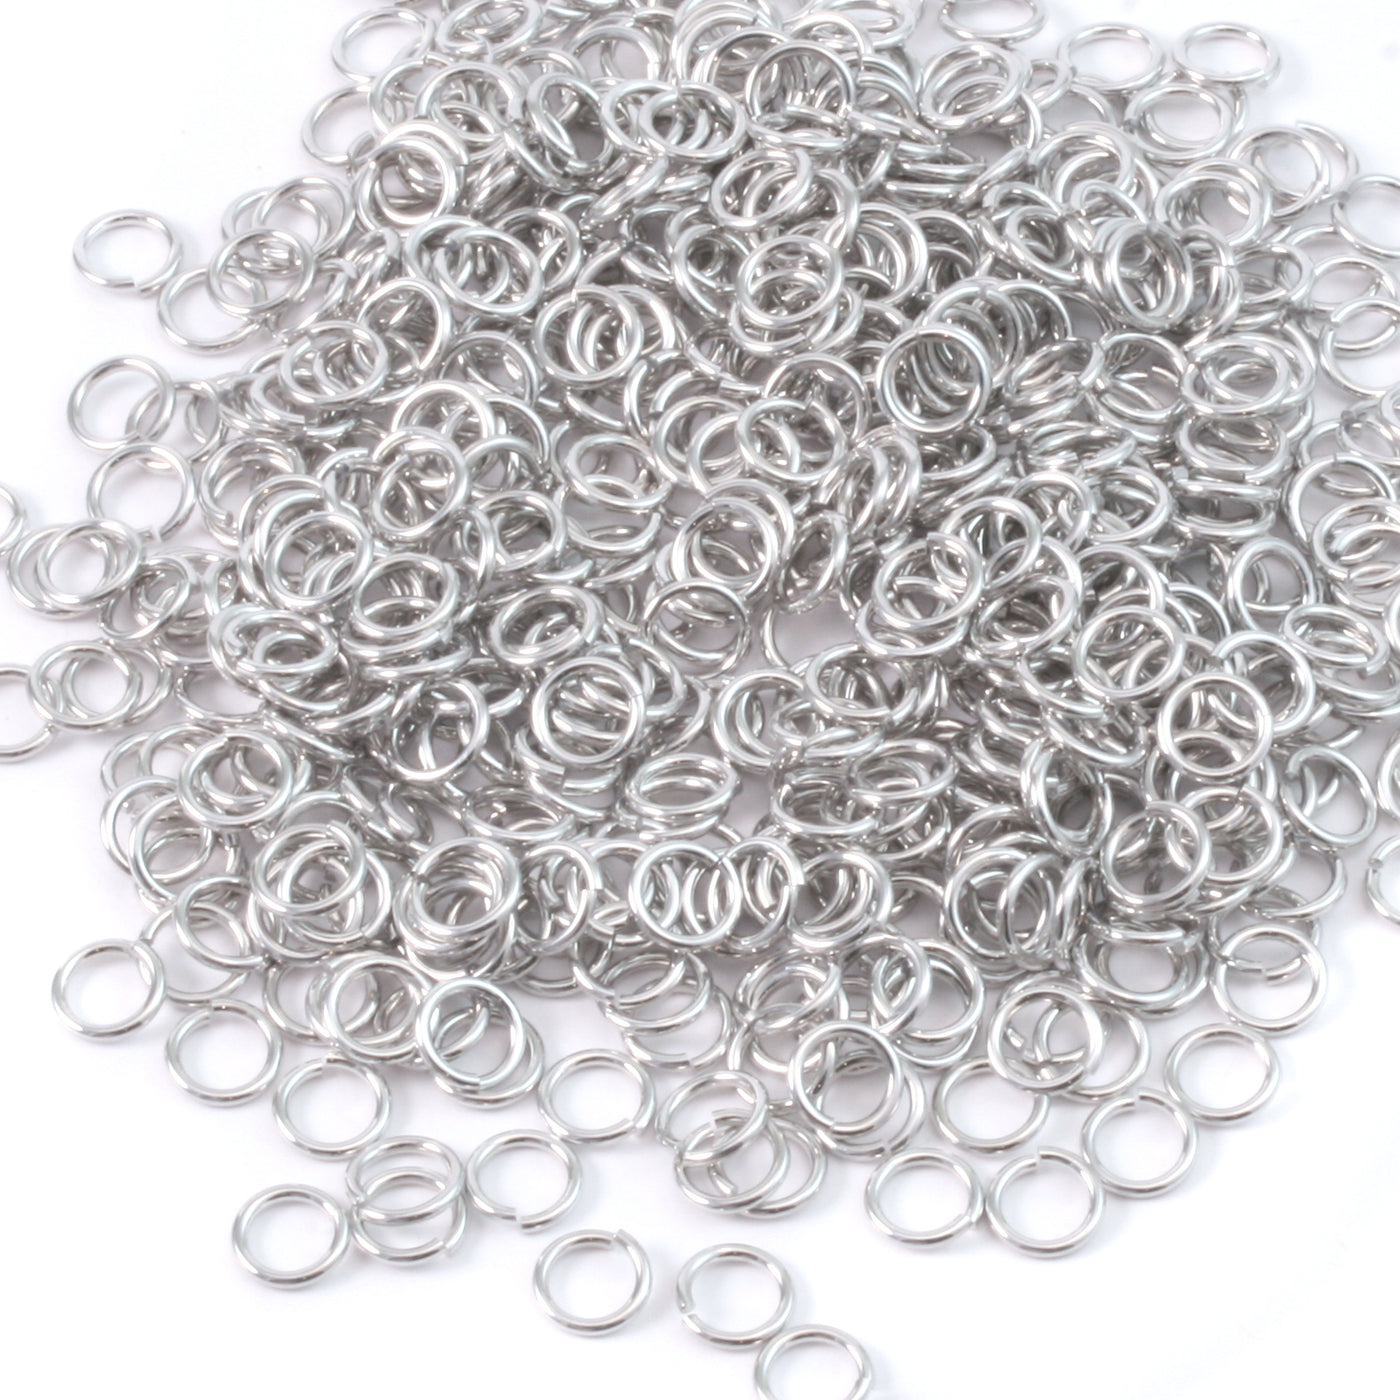 Aluminum 4mm I.D. 16 Gauge Jump Rings, 1 oz (~580 rings) – Beaducation